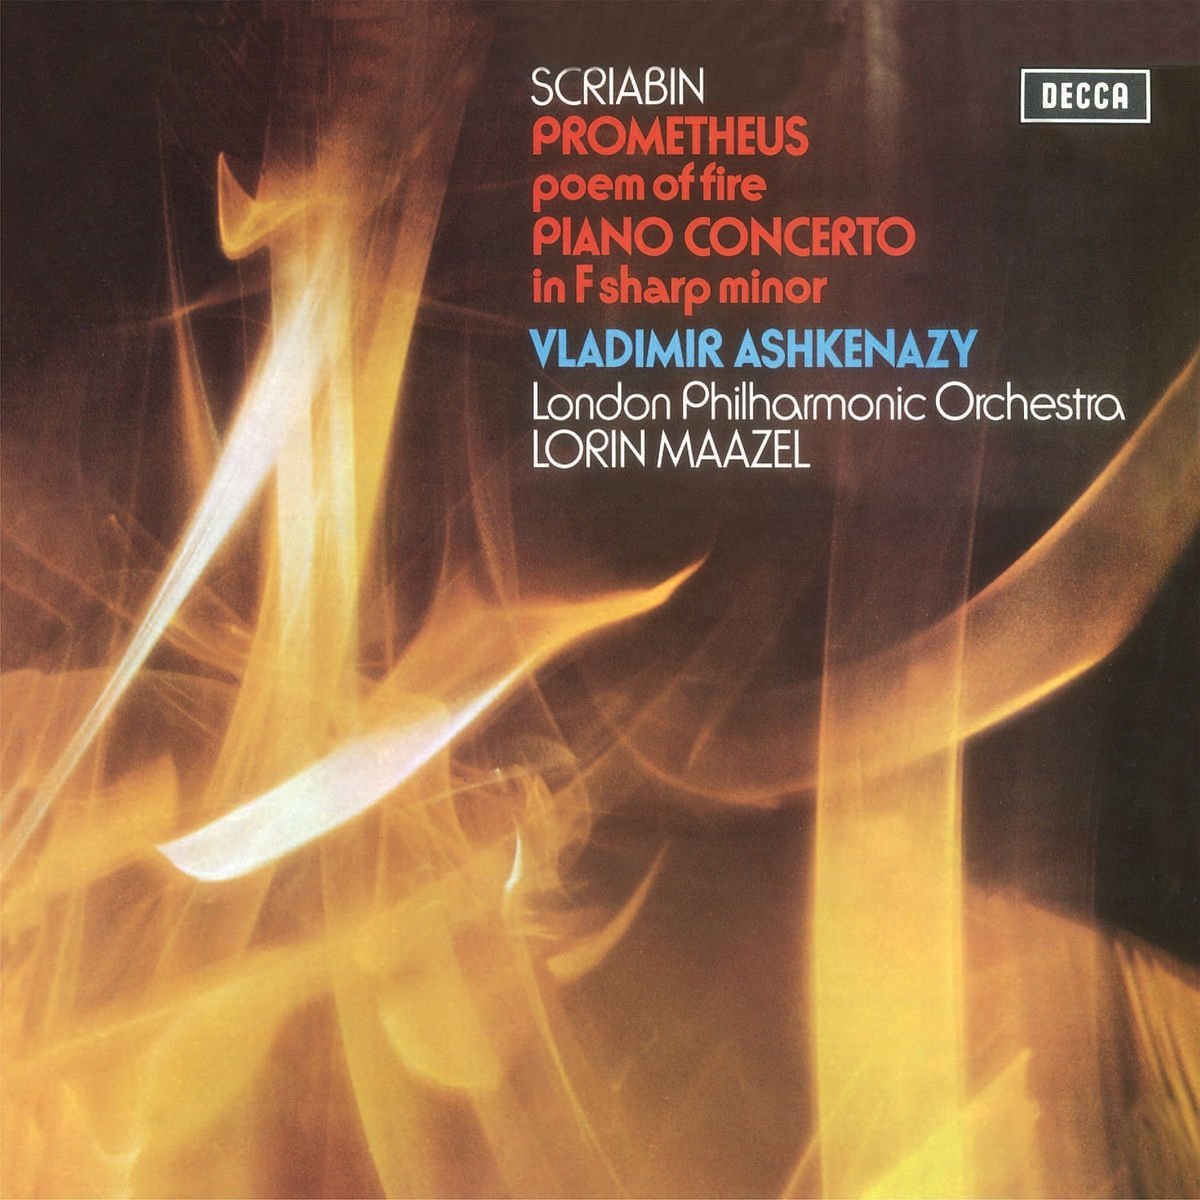 Scriabin - Piano Concerto - Vinyl | Vladimir Ashkenazy, Lpo, Lorin Maazel